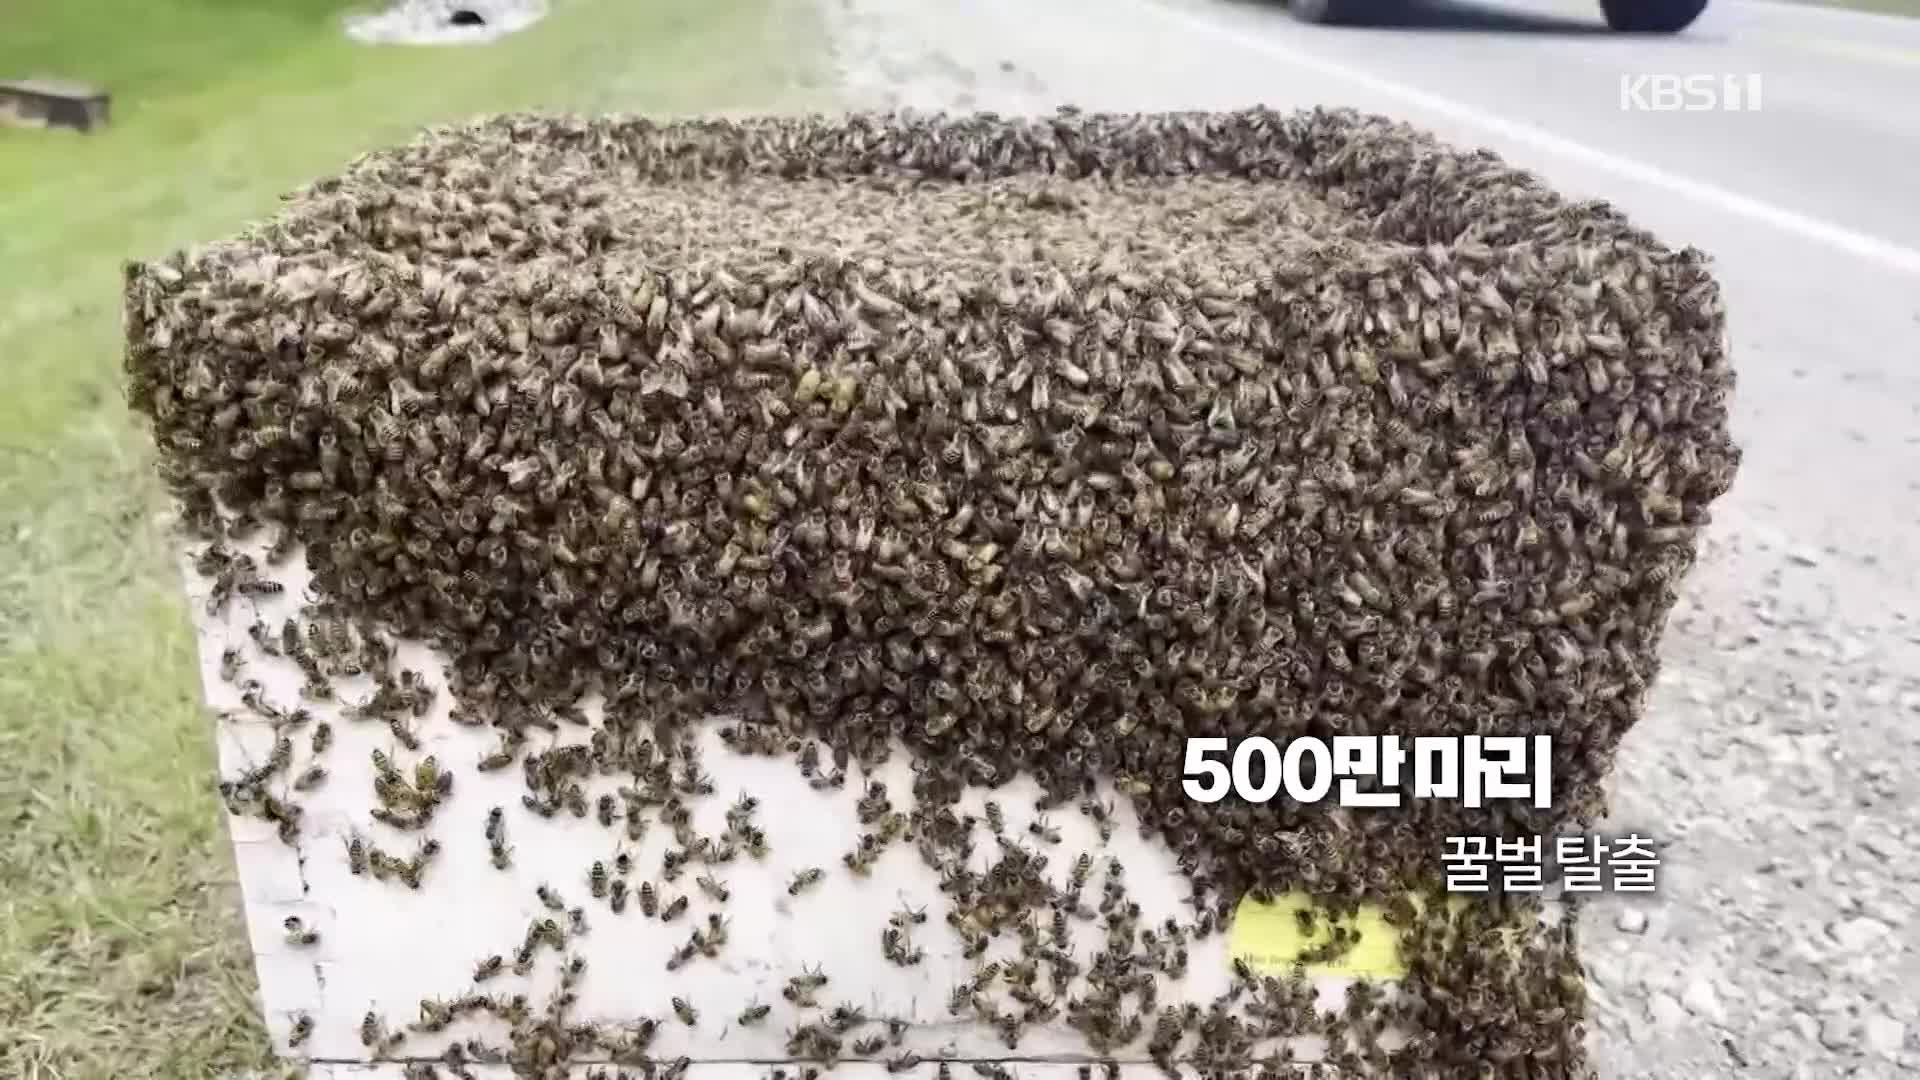 [오늘의 영상] 캐나다서 꿀벌 500만 마리 탈출 대소동